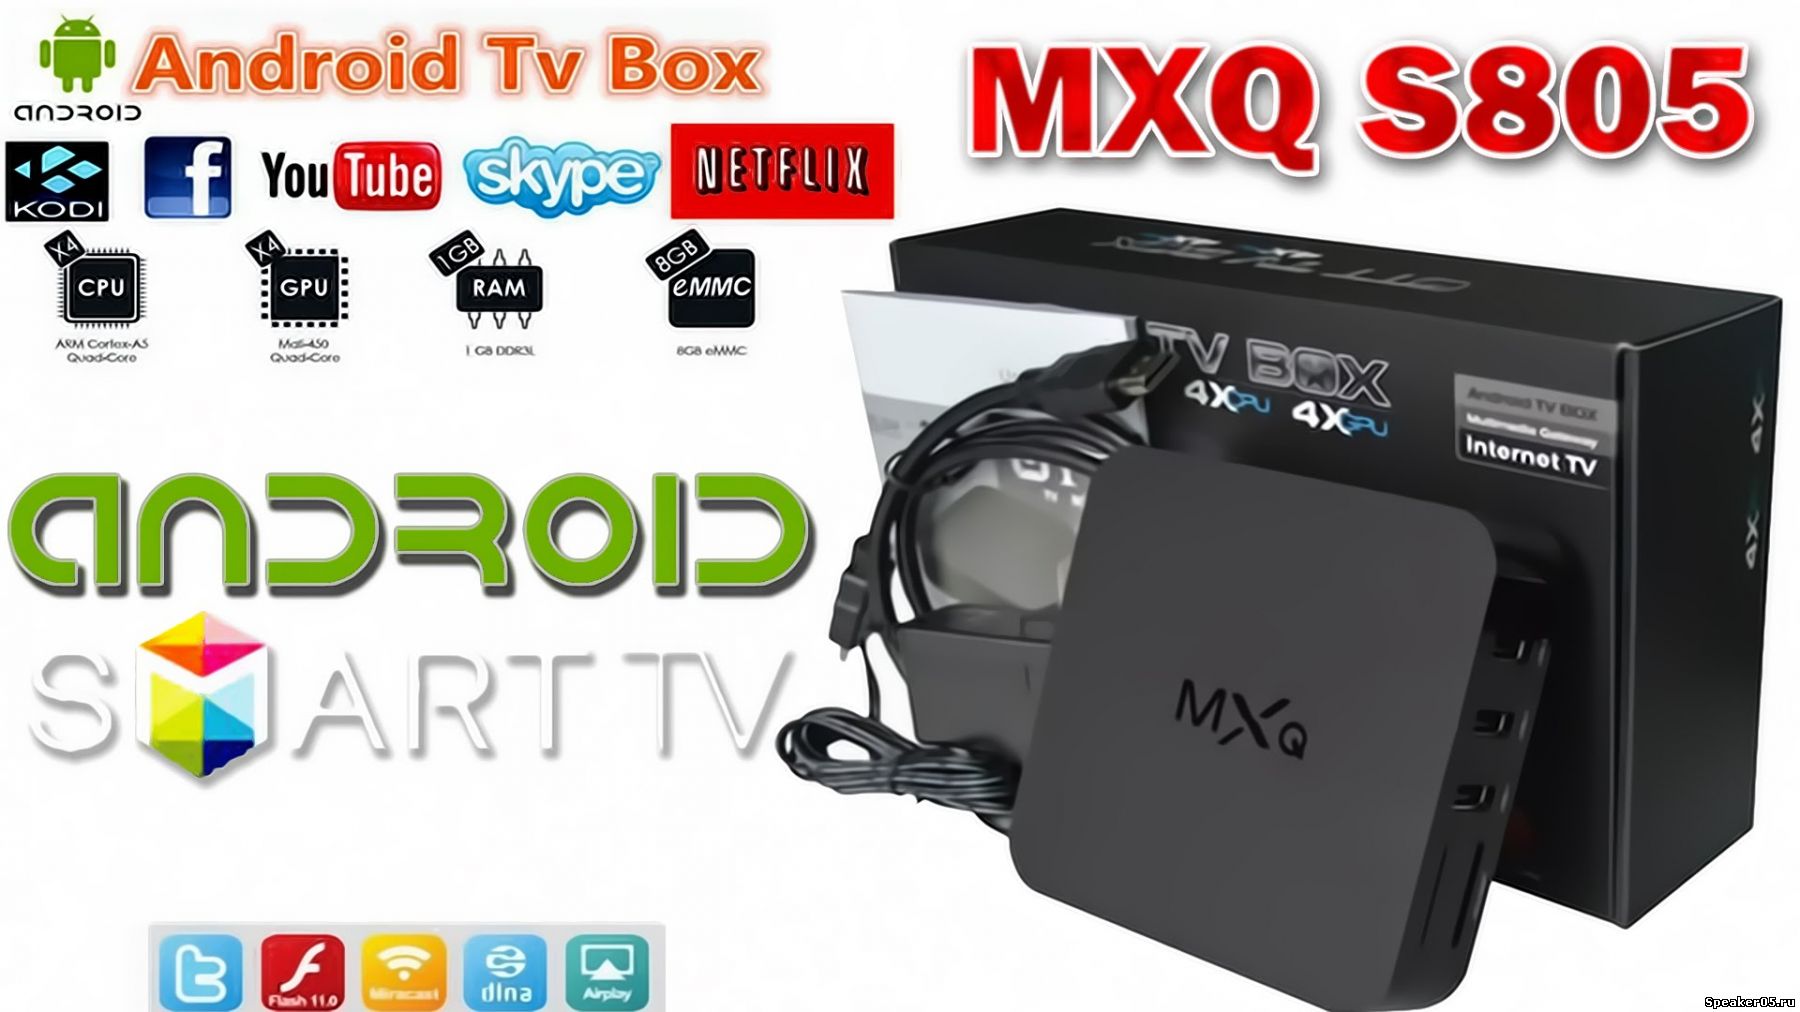 Новая мощная Smart TV приставка Mxq S805